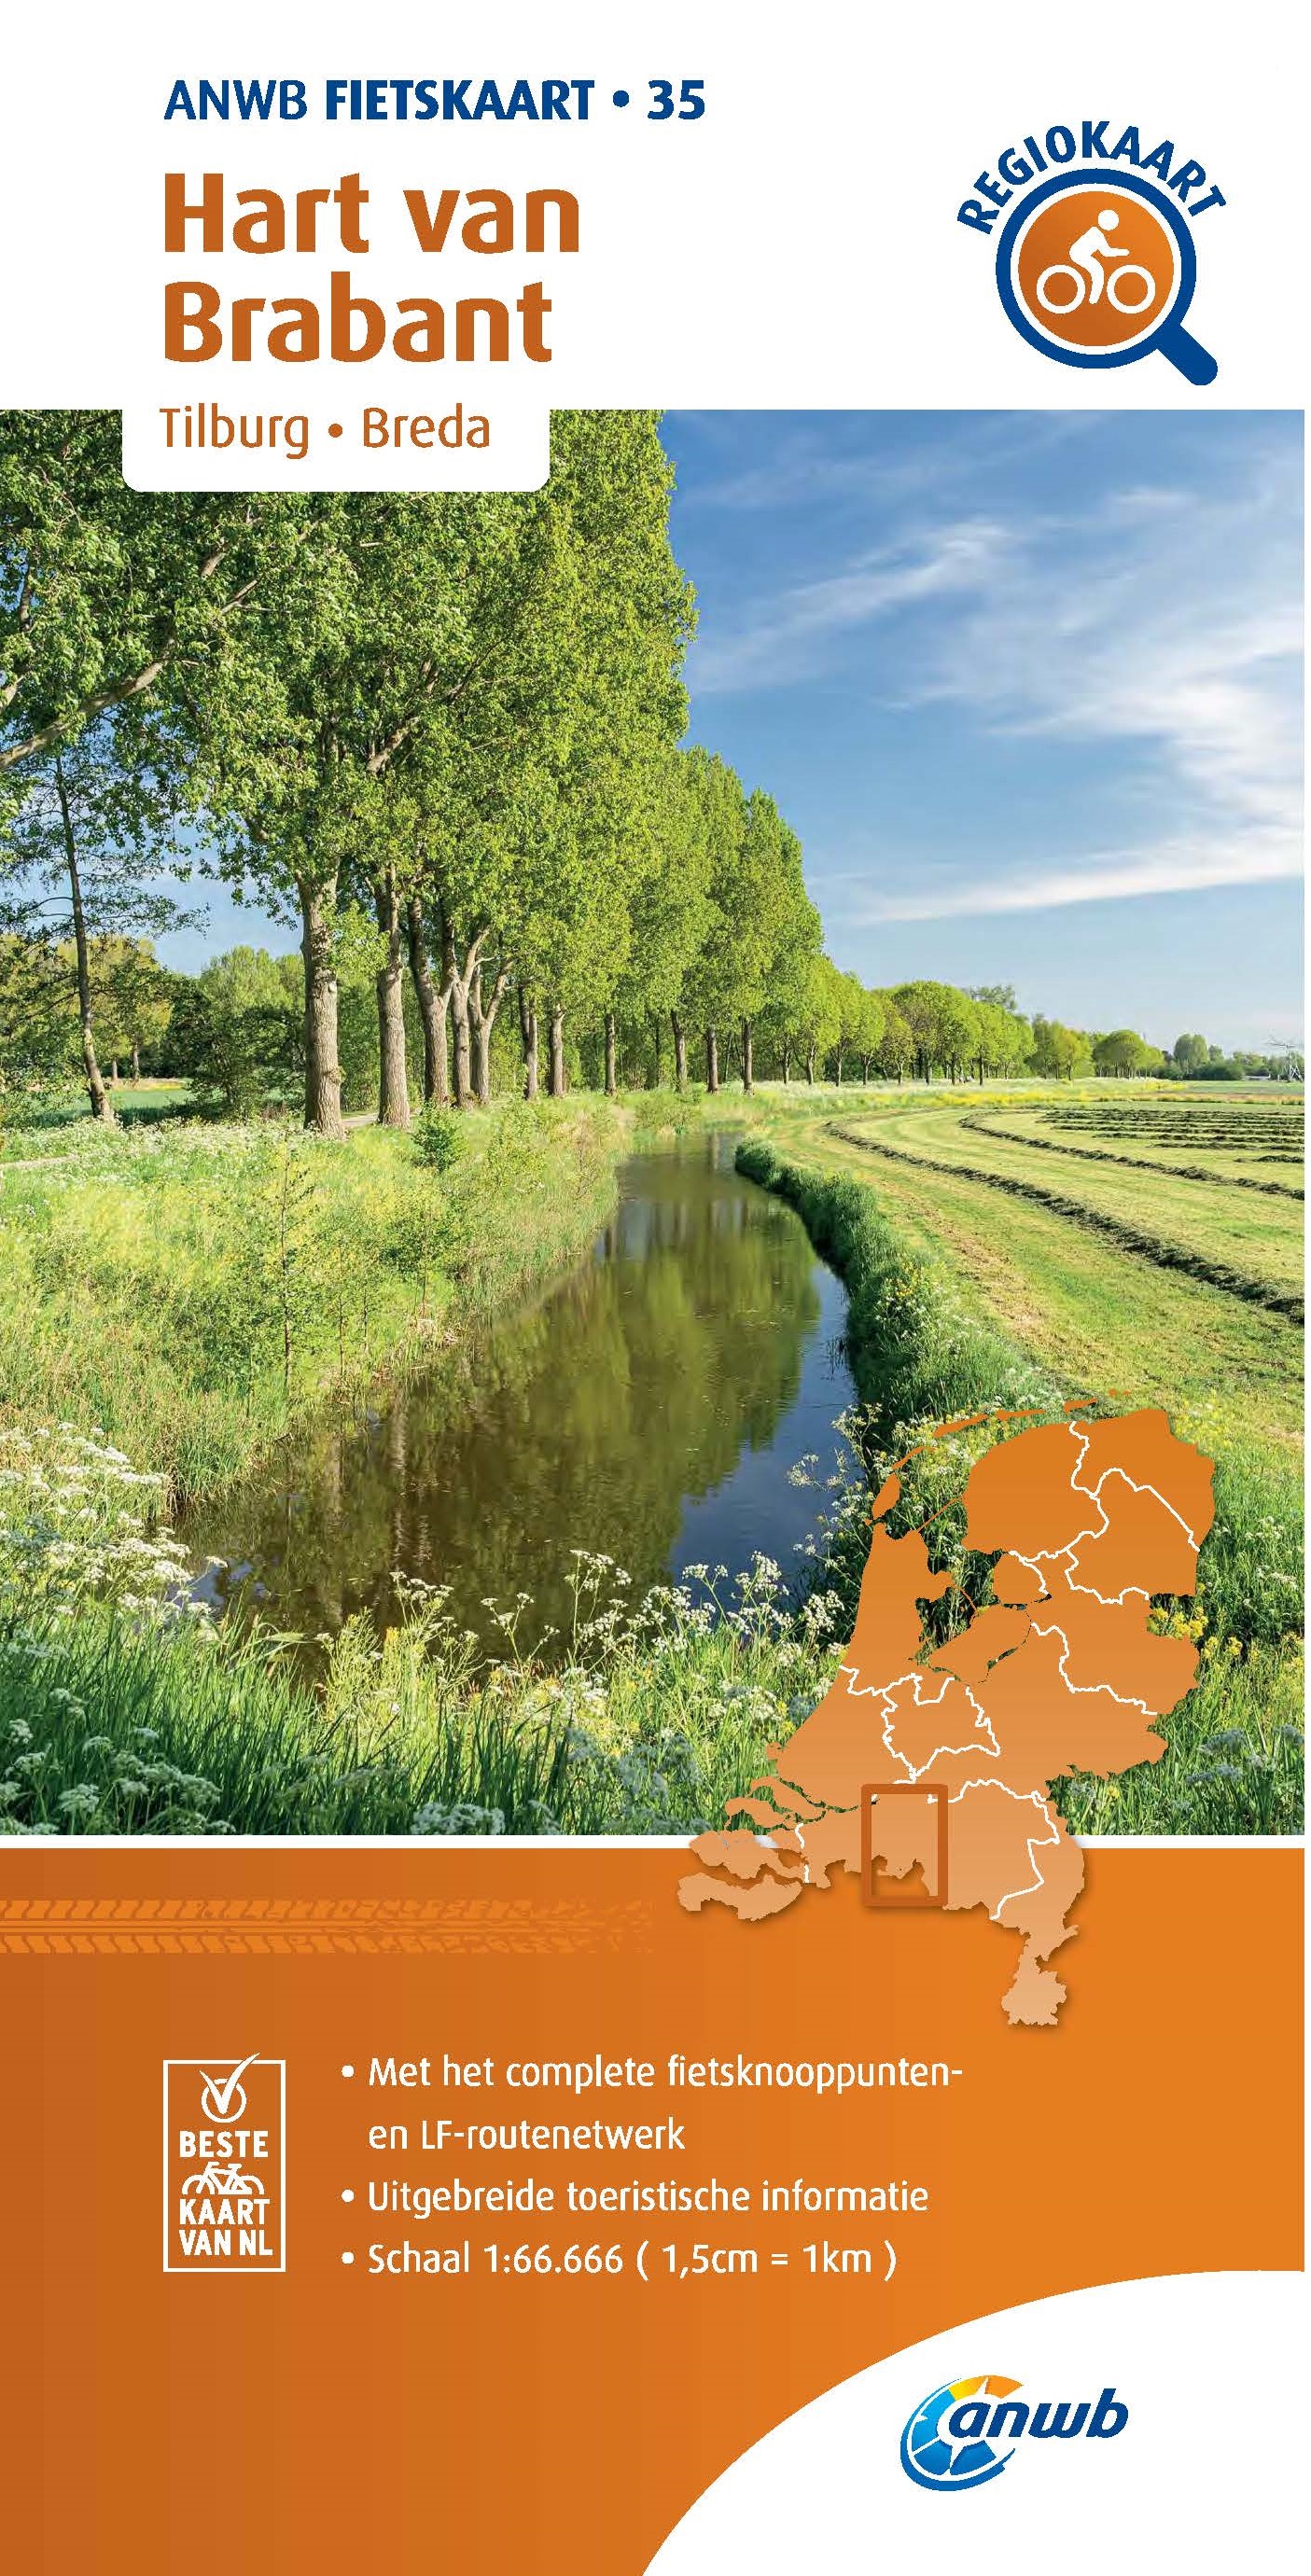 Online bestellen: Fietskaart 35 Regio Fietskaart Hart van Brabant - Noord Brabant midden | ANWB Media